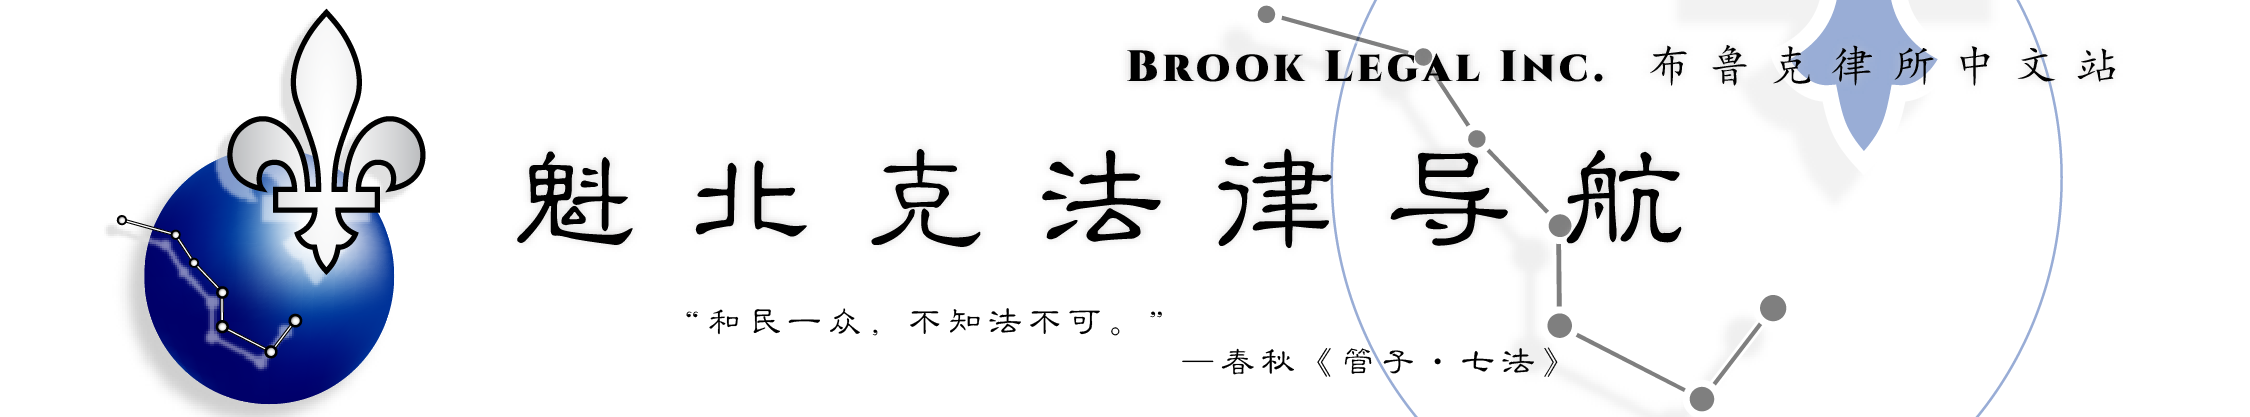 魁北克法律导航 | Brook Legal Inc. 布鲁克律师事务所中文站